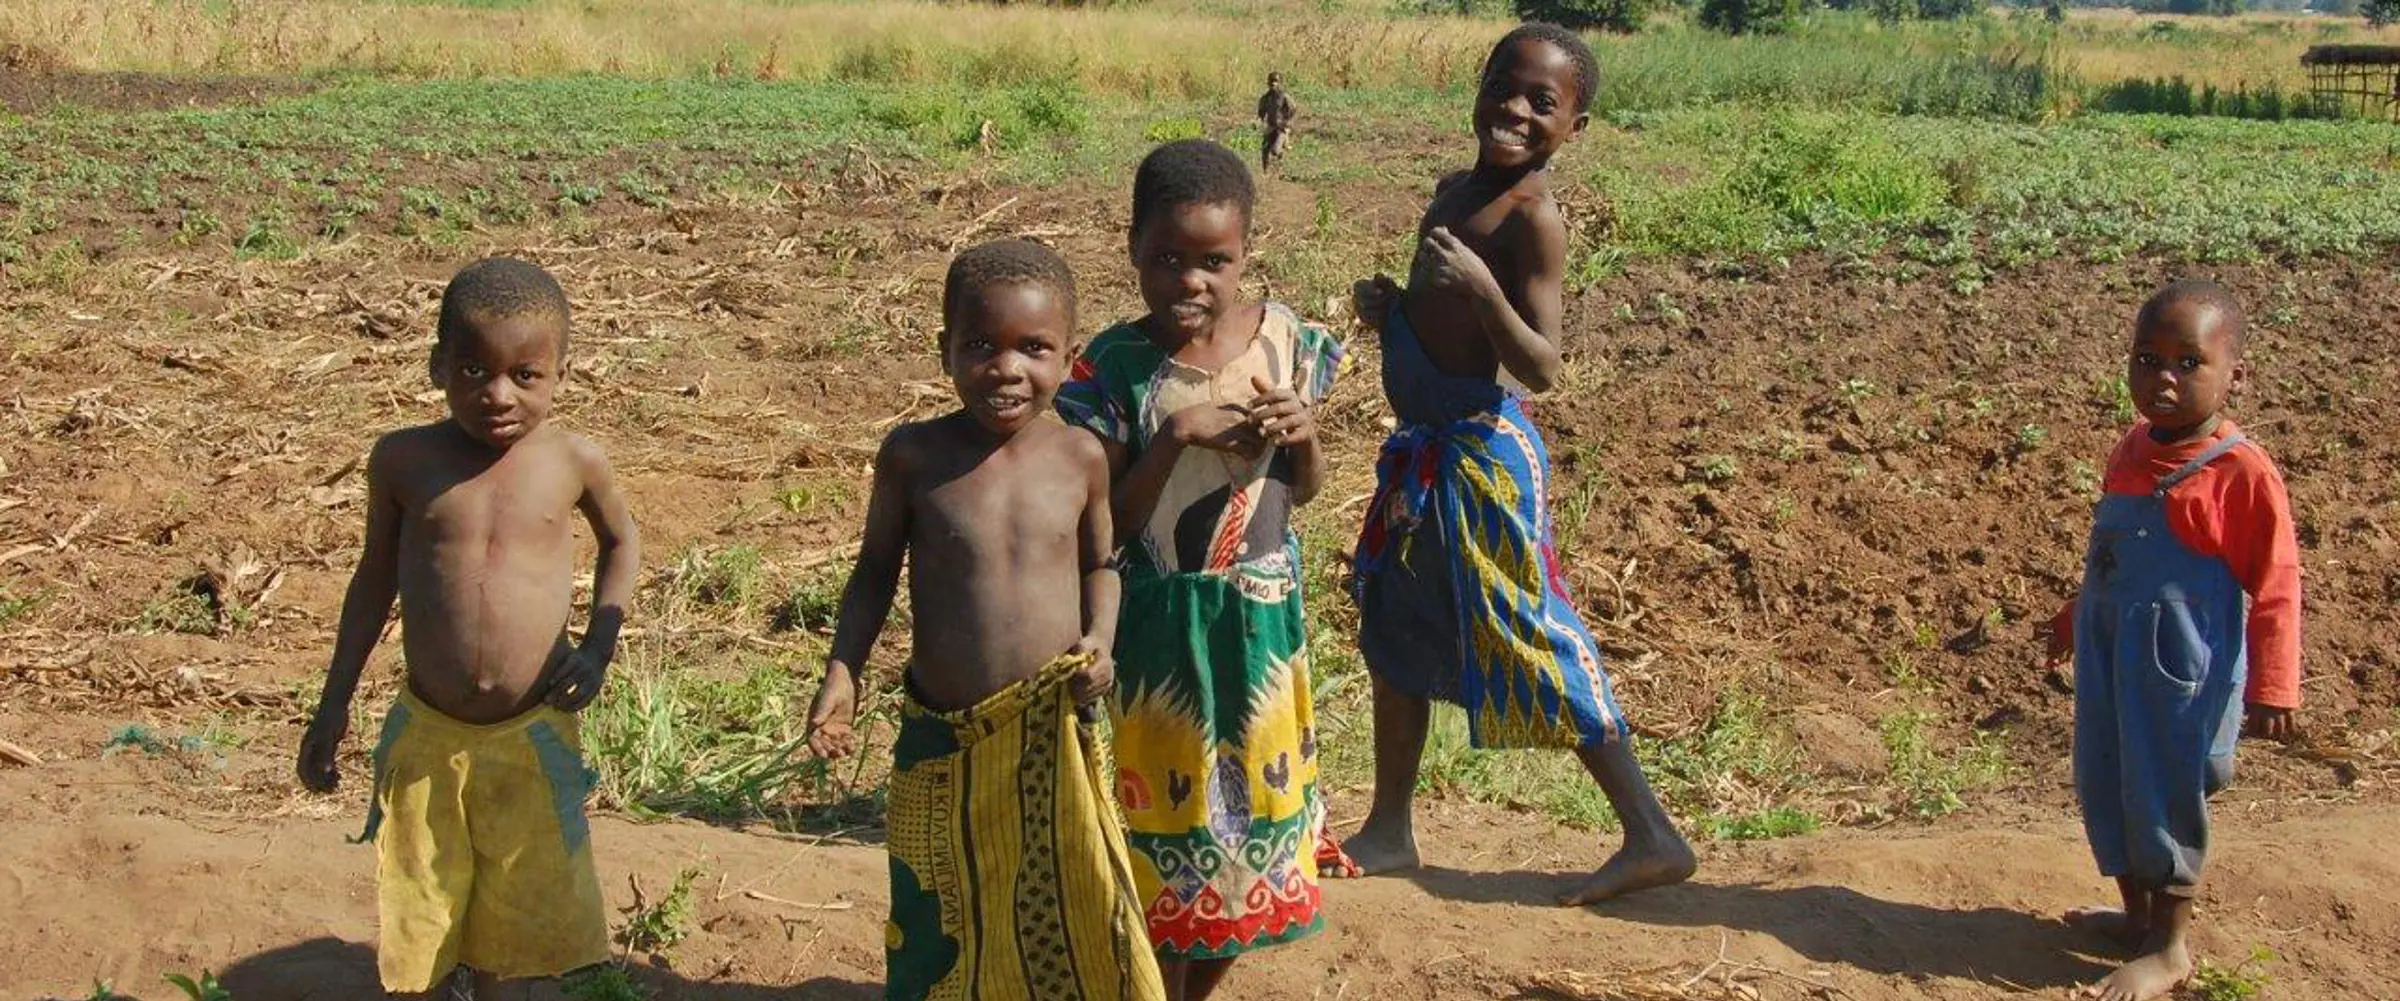 Grupo de niños en país africano